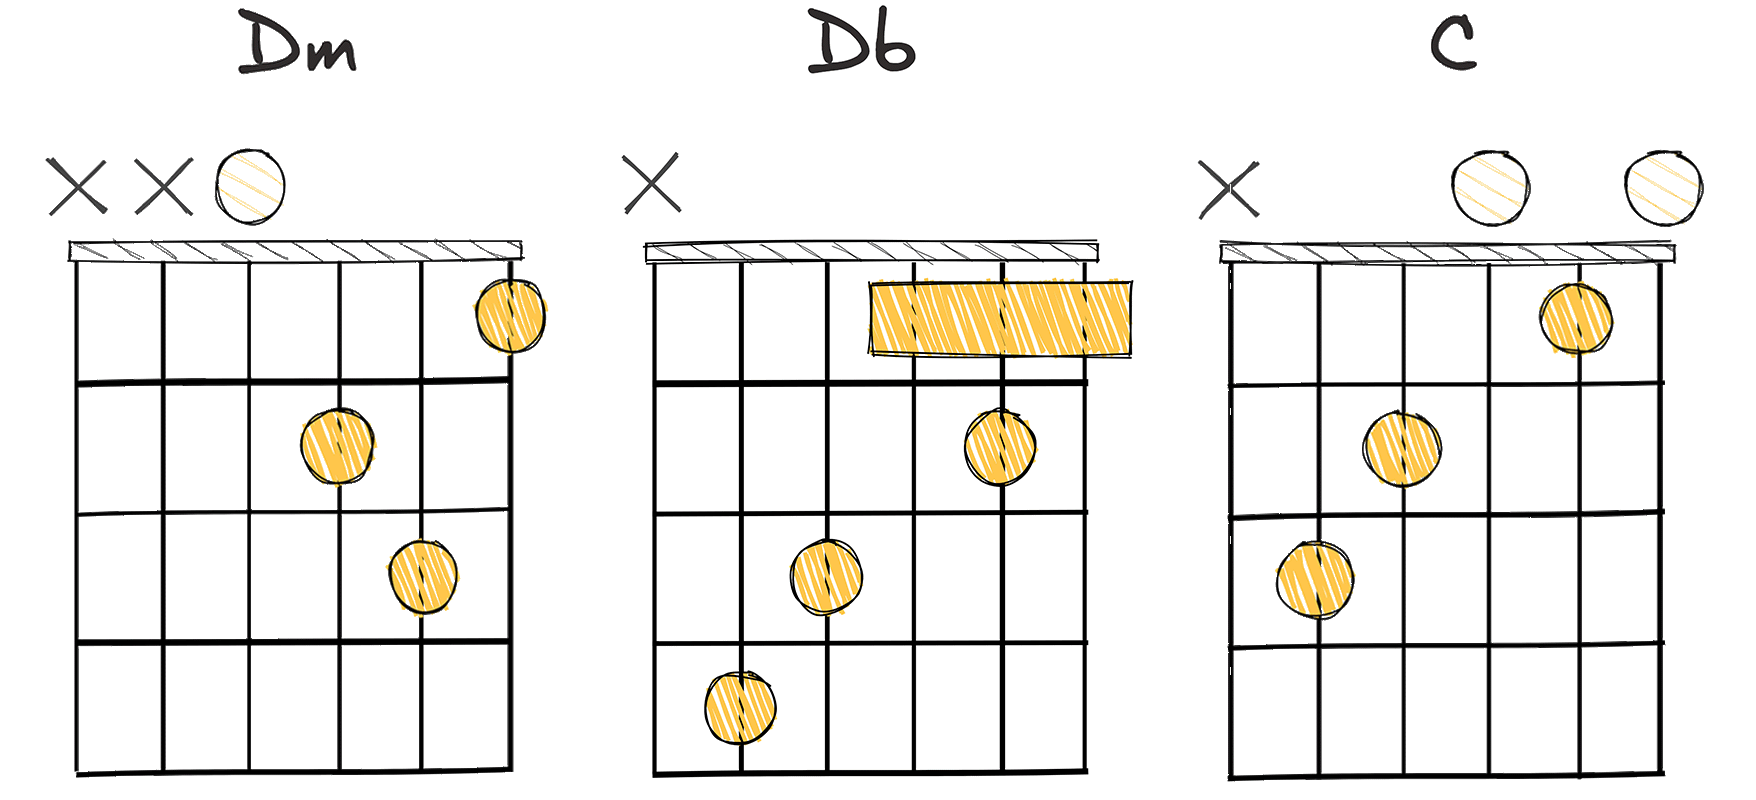 ii - bII - I (2 - flat2 - 1) chords diagram